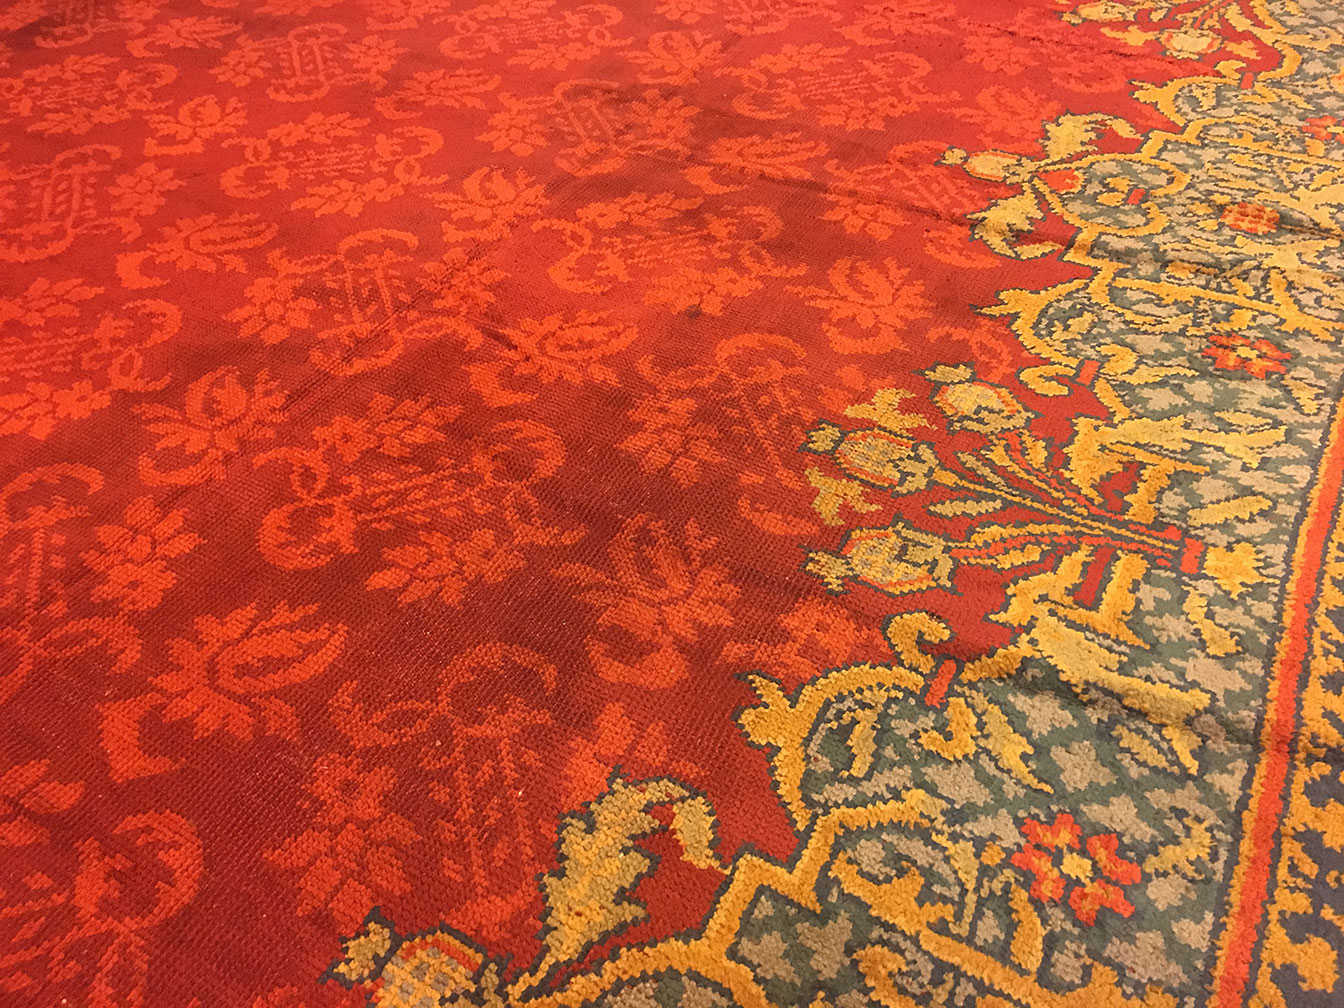 Antique axminster Carpet - # 52410